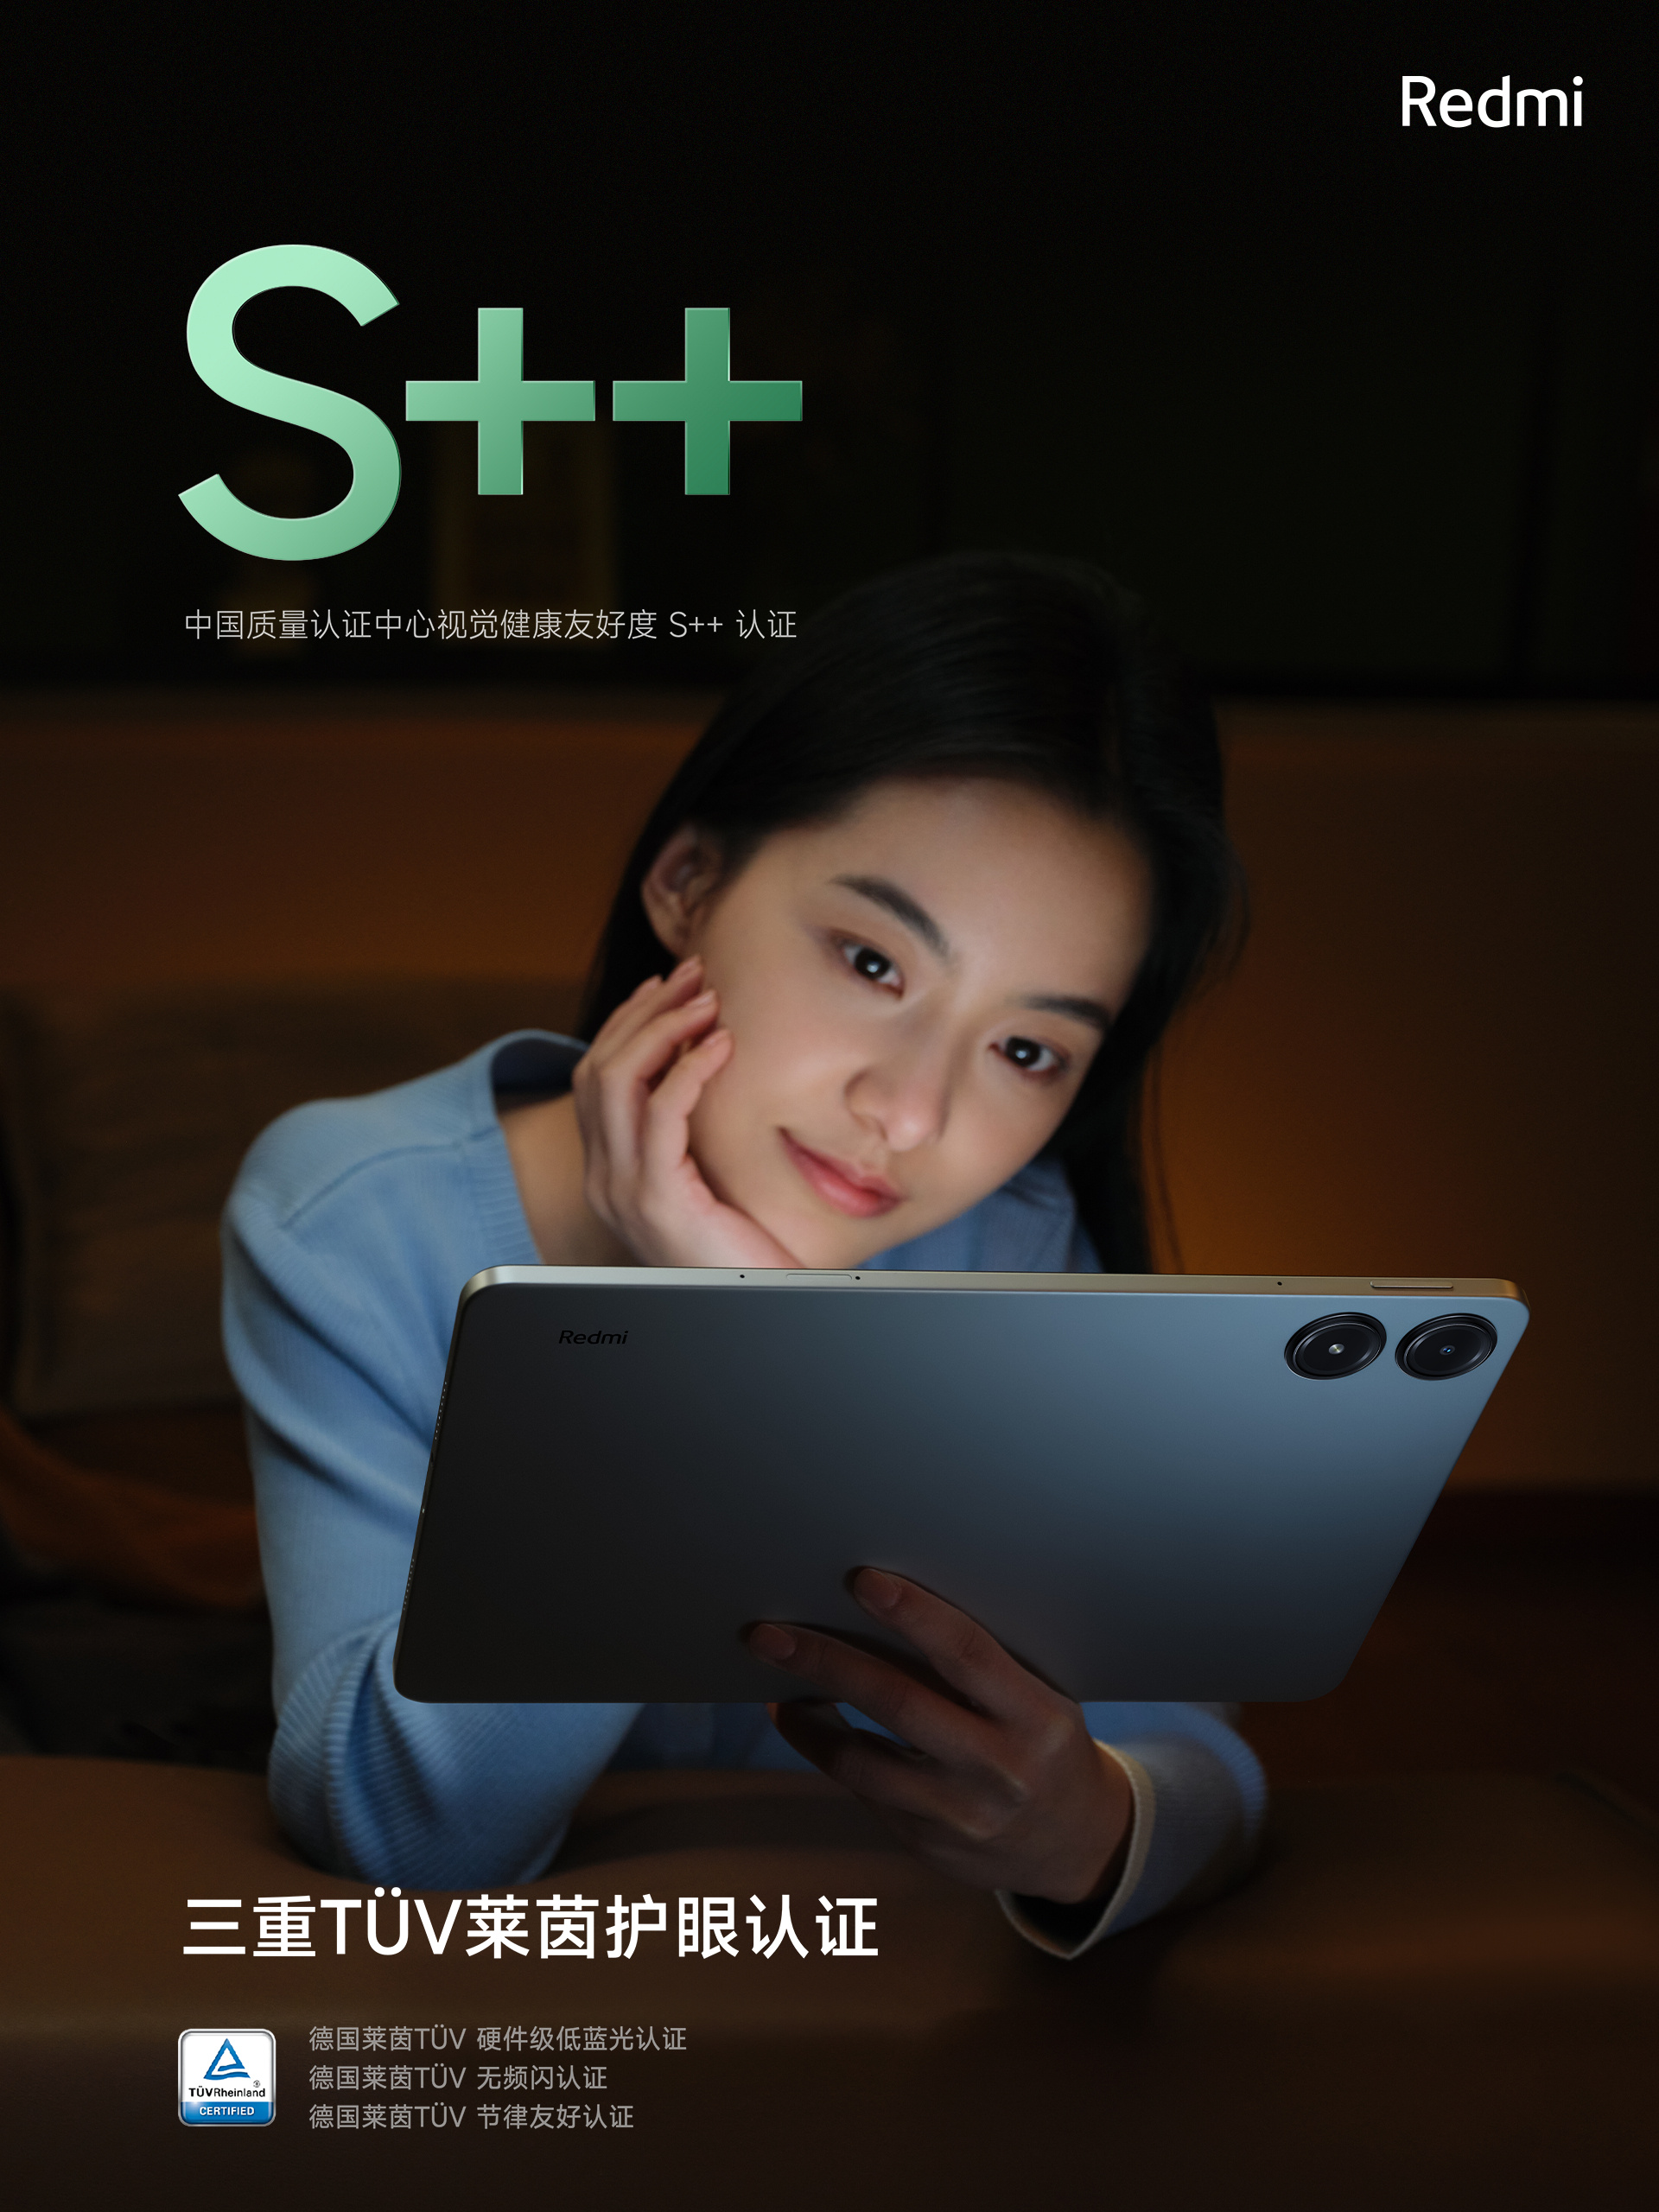 Xiaomi ra mắt máy tính bảng đẹp như iPad, chip Snapdragon 7s Gen 2 mạnh mẽ, pin 10.000mAh, giá chỉ hơn 5 triệu đồng- Ảnh 6.